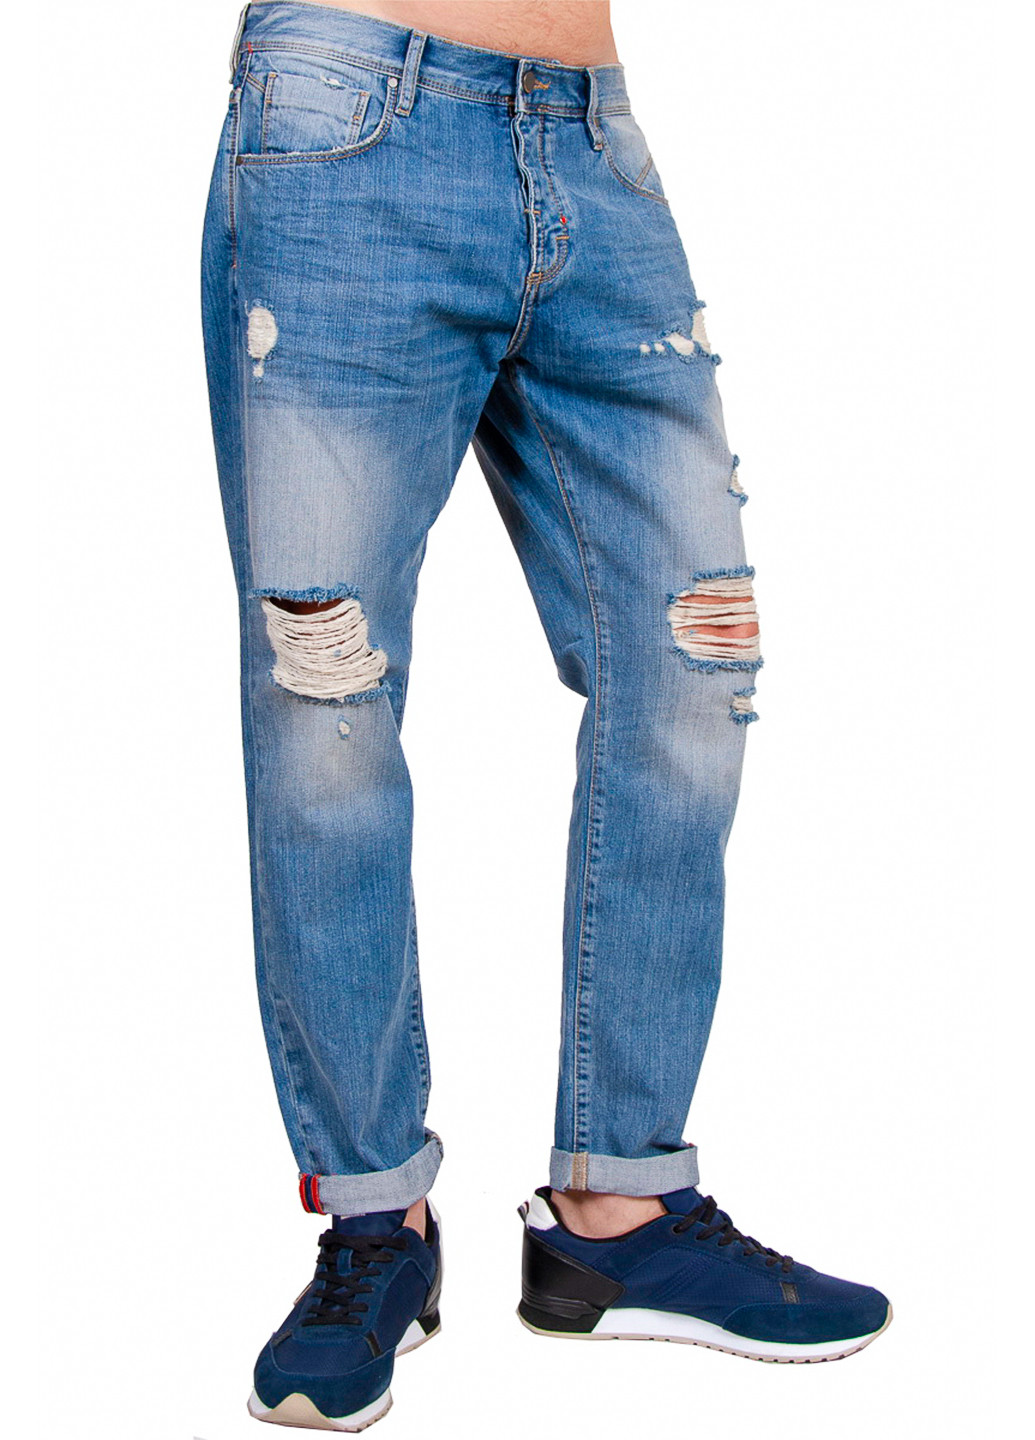 Синие летние джинсы Antony Morato